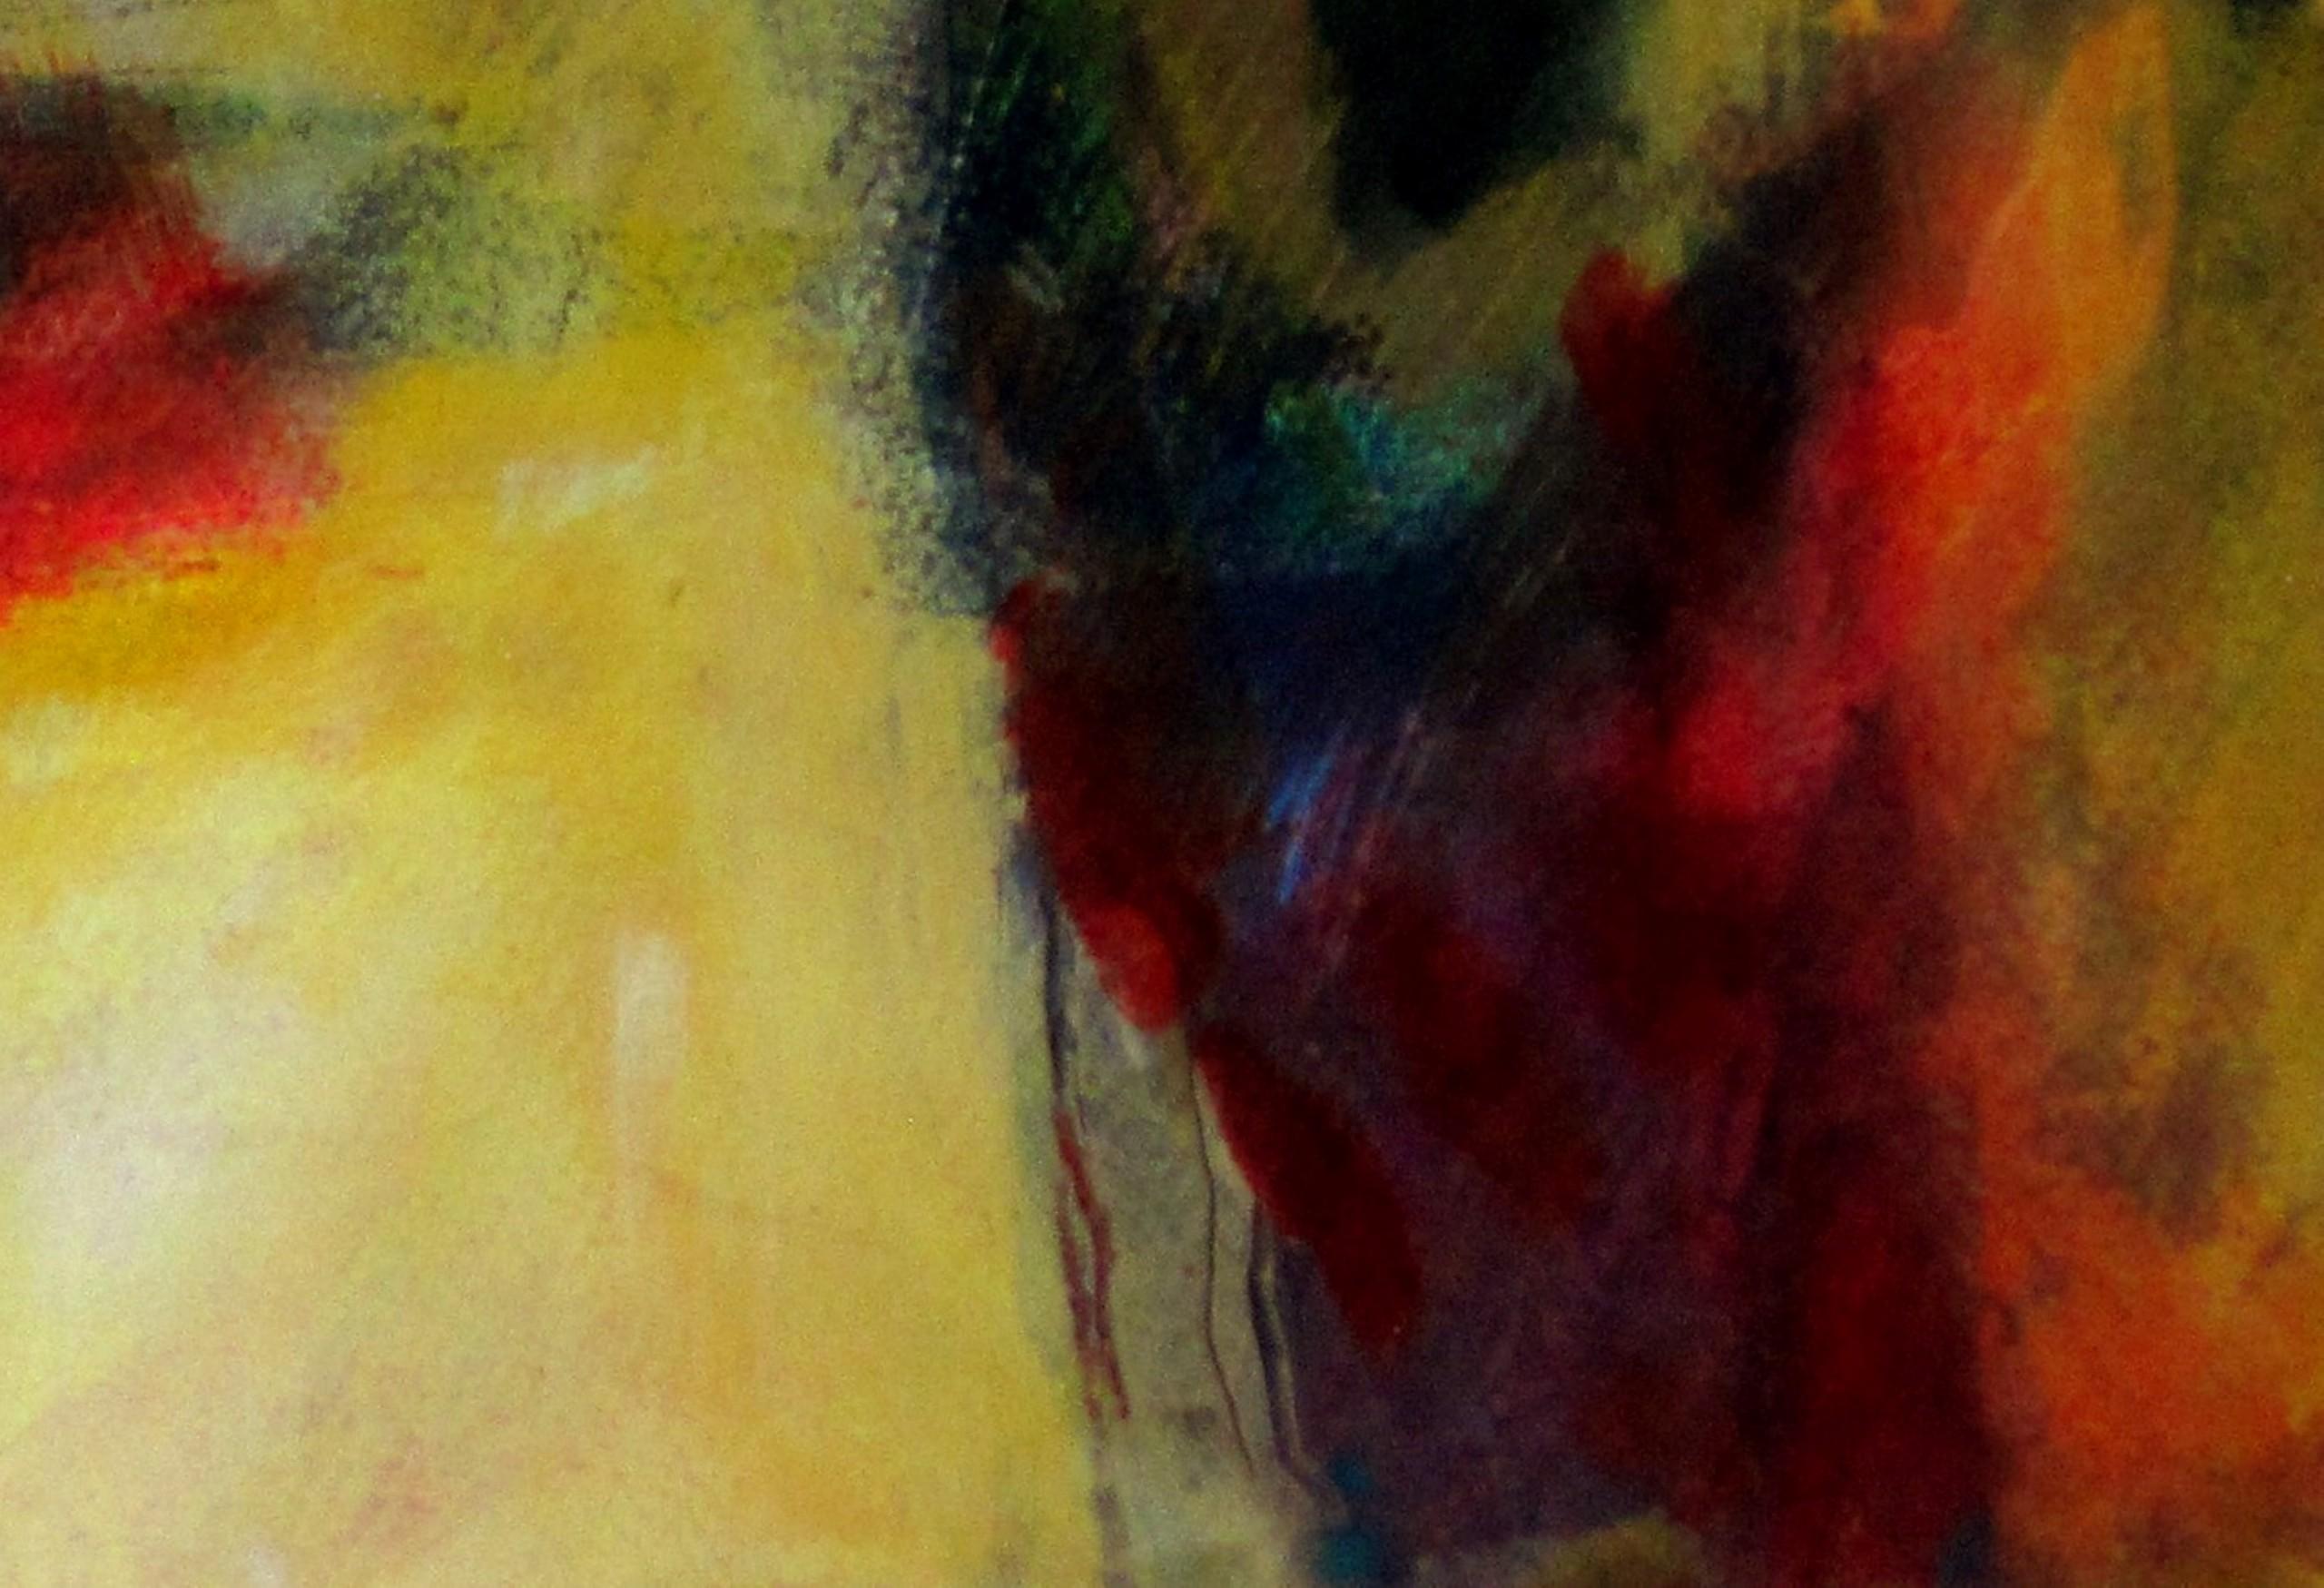 Gelbe Landschaft - Jon Rowland - Abstrakter Expressionismus [2020]

original
Mischtechnik aus Acryl, Öl und Collage auf Papier
Bildgröße: H:51 cm x B:71 cm
Komplette Größe des ungerahmten Werks: H:56 cm x B:76 cm x T:.1cm
Rahmengröße: H:72 cm x B:92